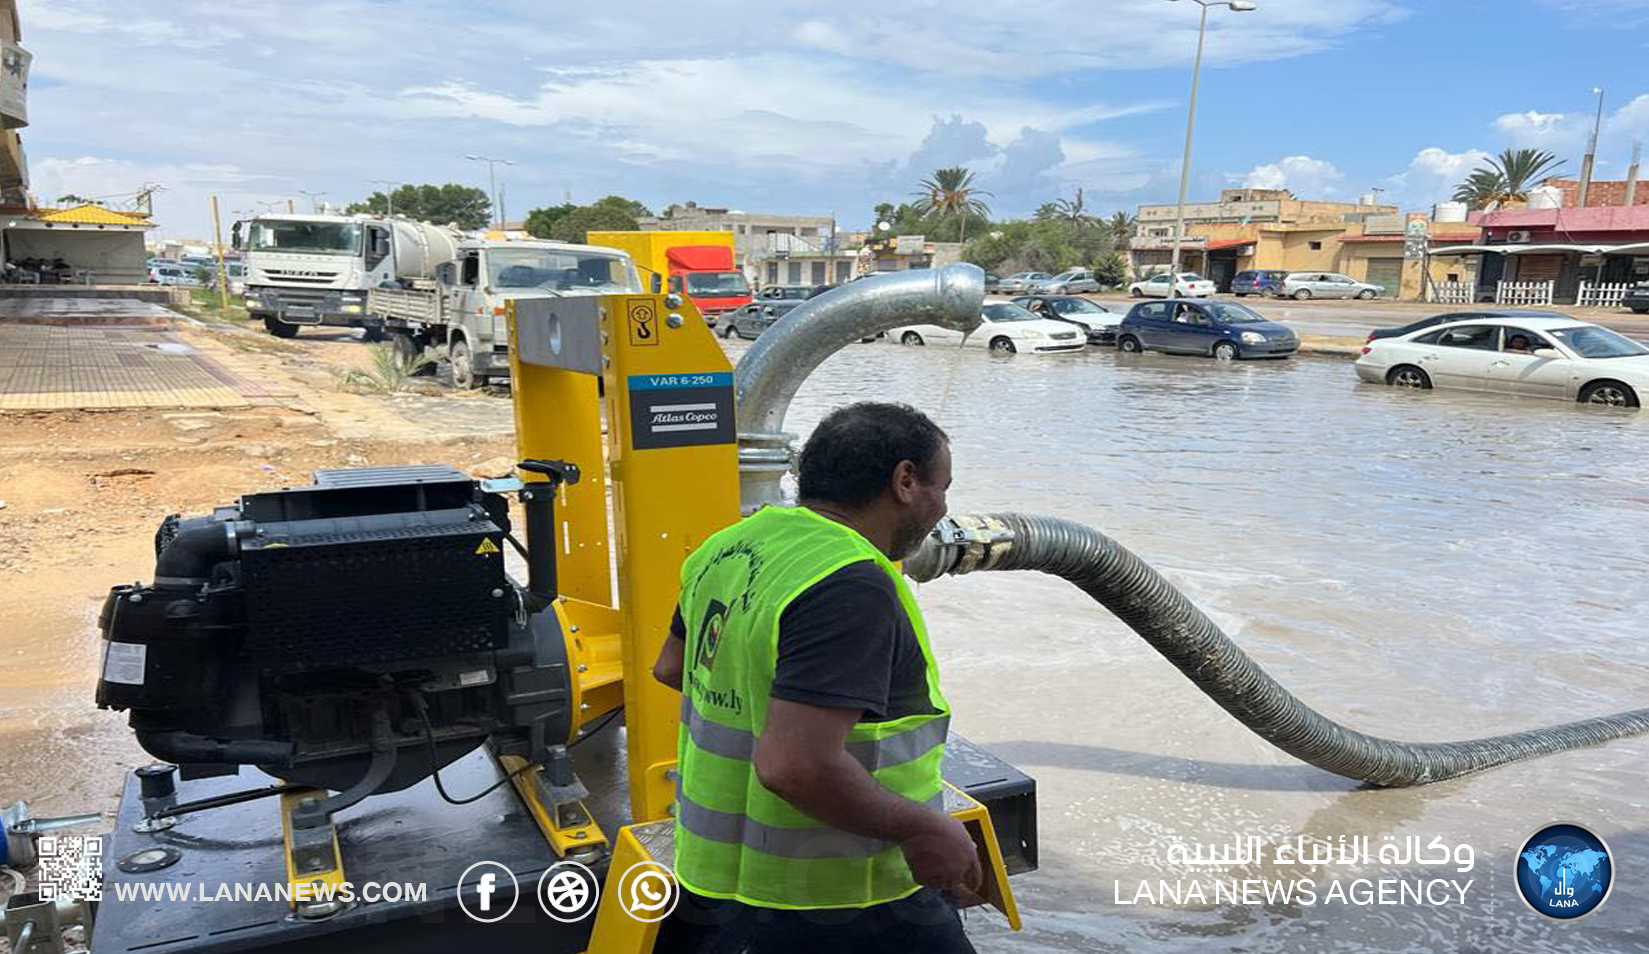 سقوط الأمطار تتسبب في اختناقات مرورية وتعطل حركة تنقل المواطنين في أغلب المدن الليبية